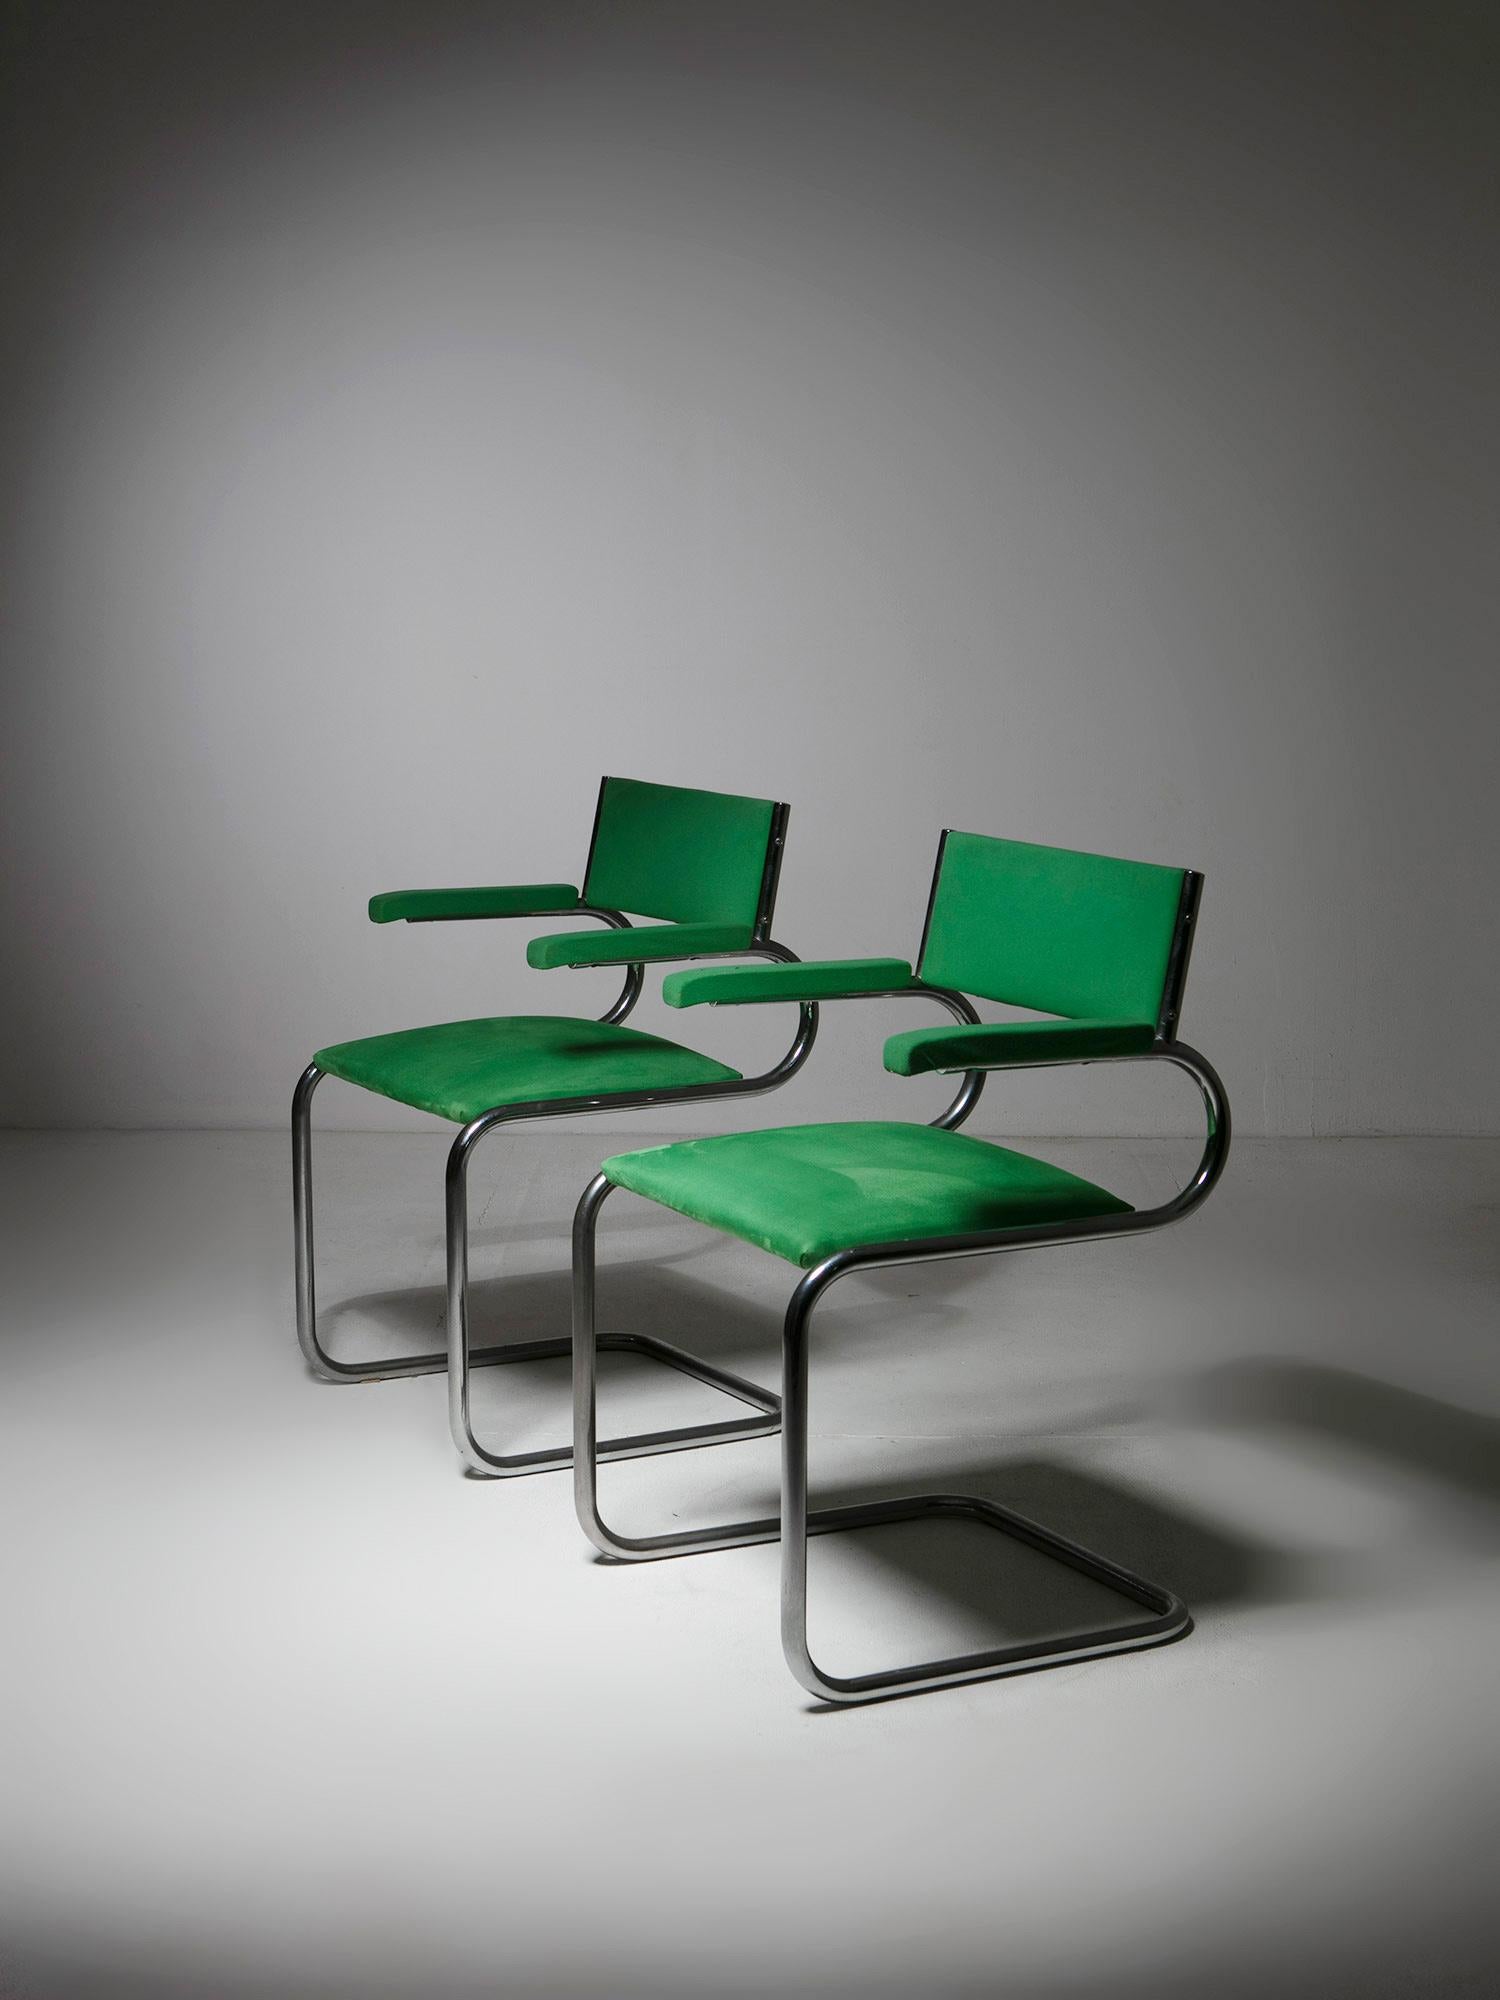 Satz von zwei Sesseln von Luigi Saccardo für Arrmet.
Mit grünem Samt bezogene Stühle mit der ikonischen Röhrenform.